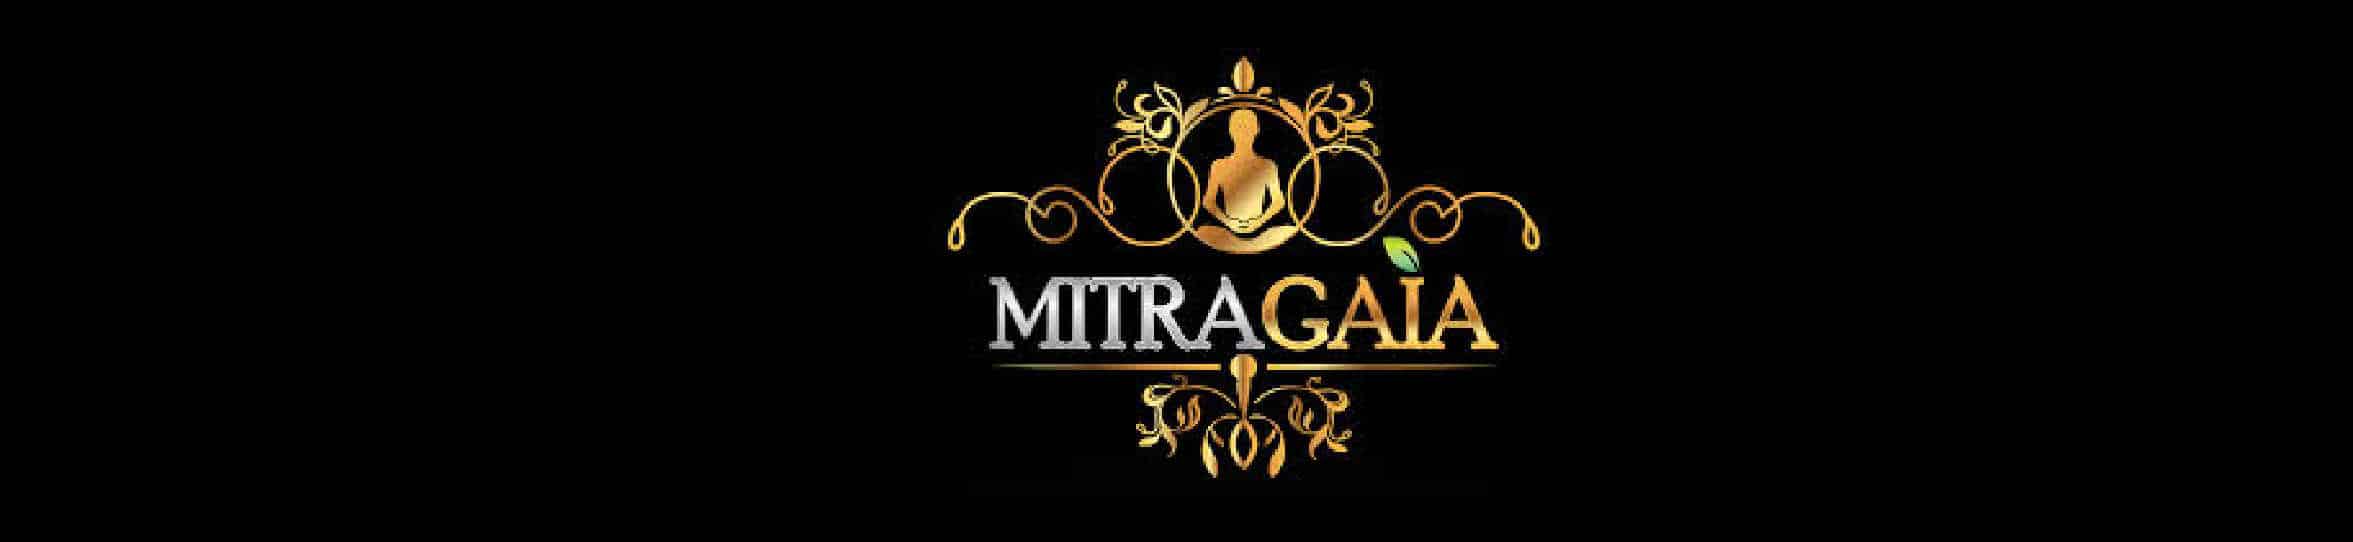 image of mitragala